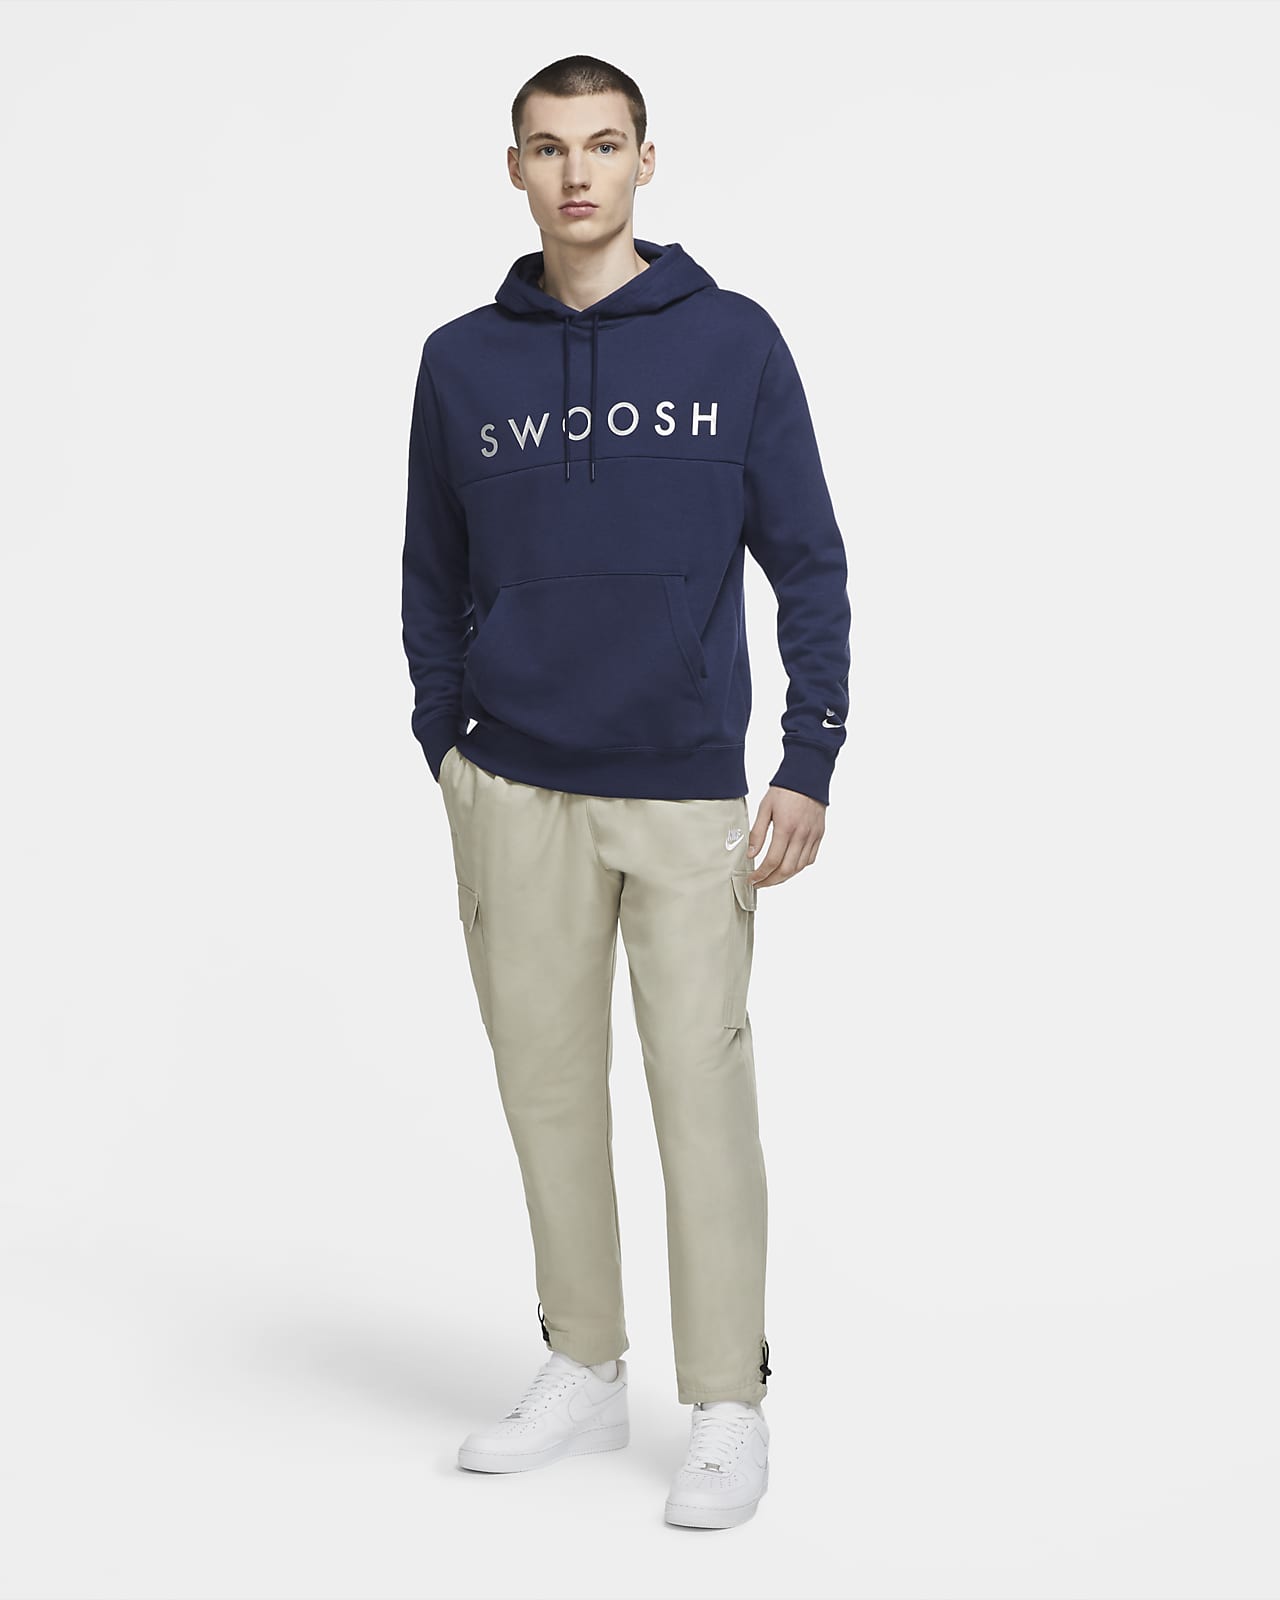 men's swoosh pullover hoodie nike sportswear